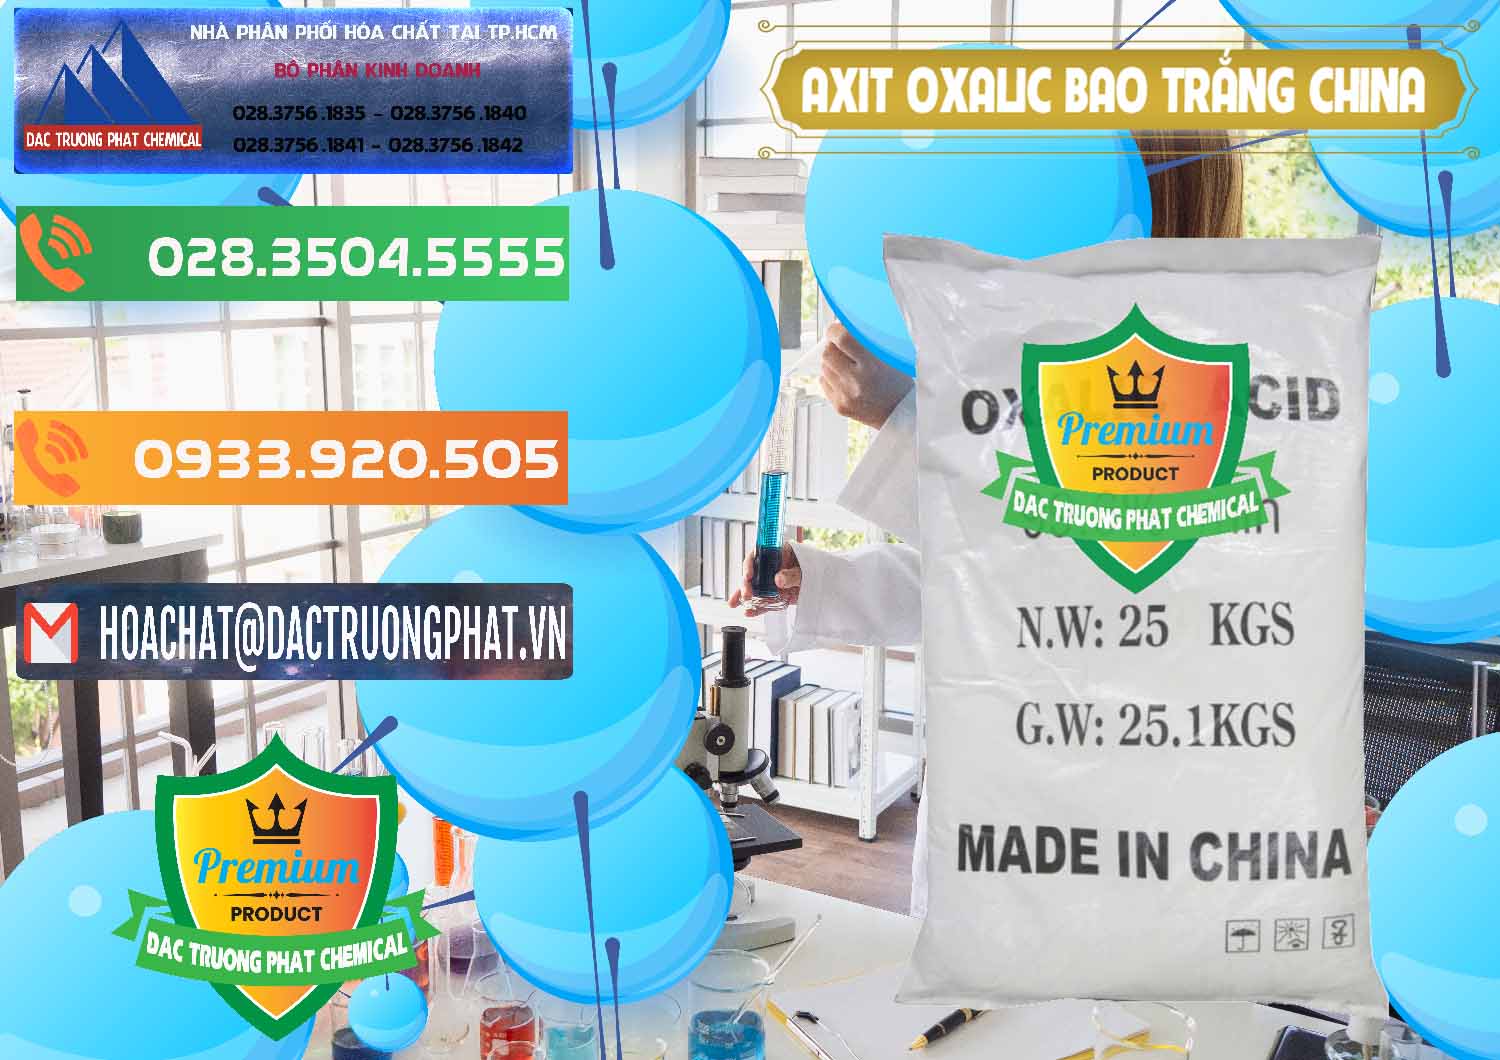 Nơi kinh doanh & bán Acid Oxalic – Axit Oxalic 99.6% Bao Trắng Trung Quốc China - 0270 - Nhà cung cấp ( phân phối ) hóa chất tại TP.HCM - hoachatxulynuoc.com.vn